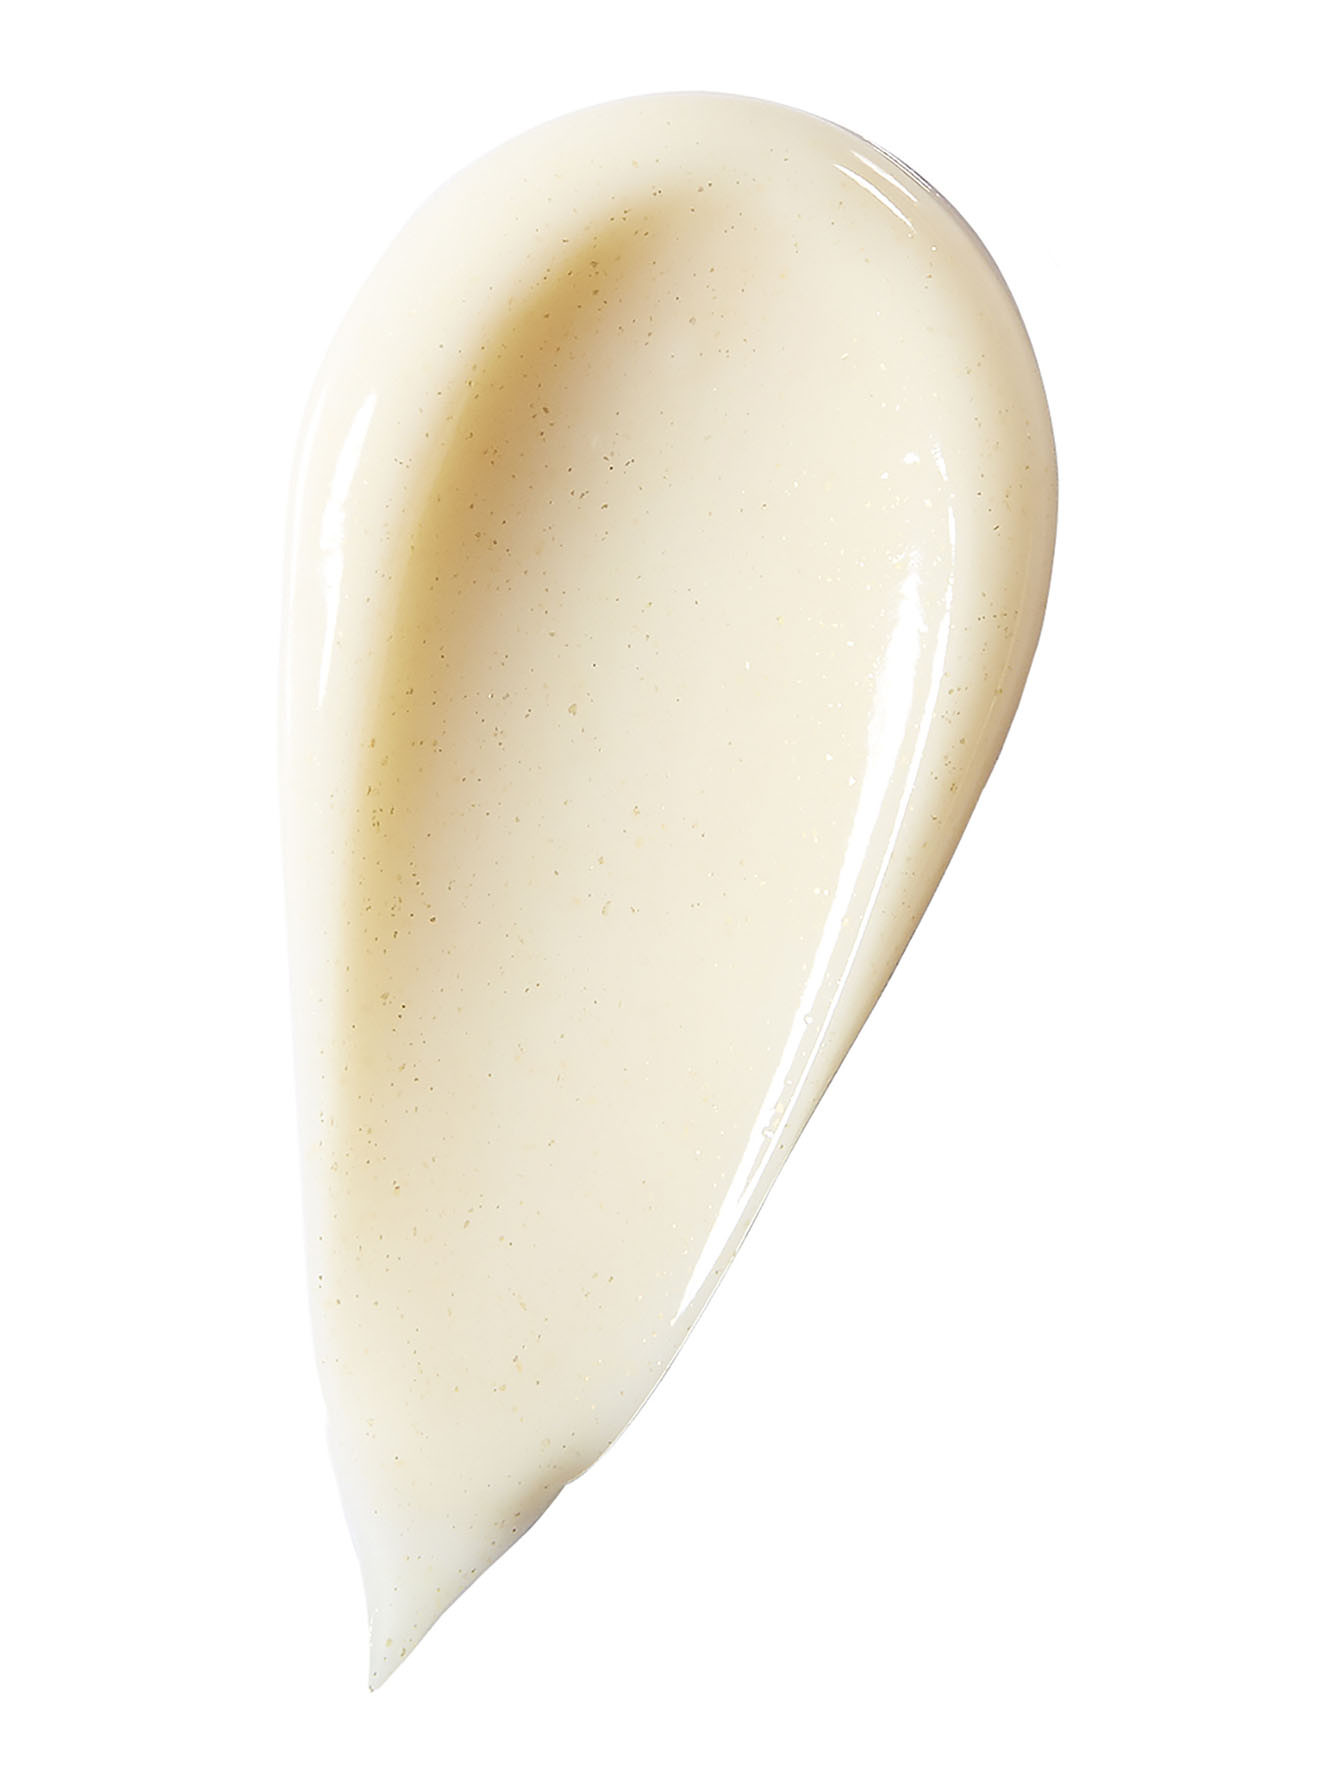 Легкий подтягивающий и укрепляющий крем Skin Caviar Luxe Cream, 50 мл - Обтравка1